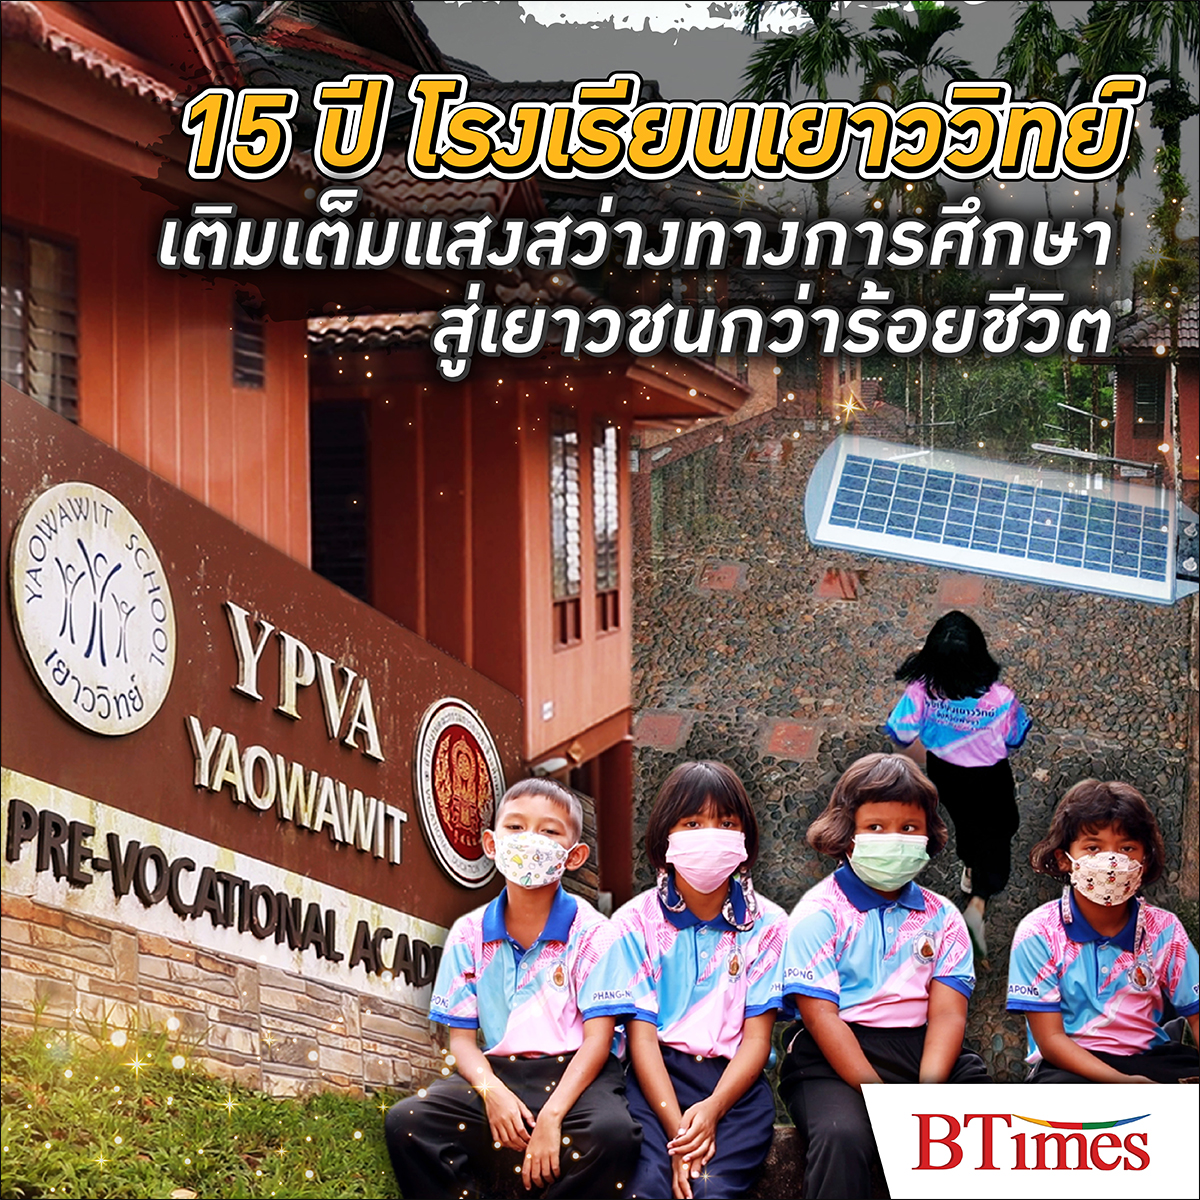 BTimes: 15 ปี โรงเรียนเยาววิทย์ เติมเต็มแสงสว่างทางการศึกษาสู่เยาวชนกว่าร้อยชีวิต - เมอร์เซเดส-เบนซ์ ประเทศไทย